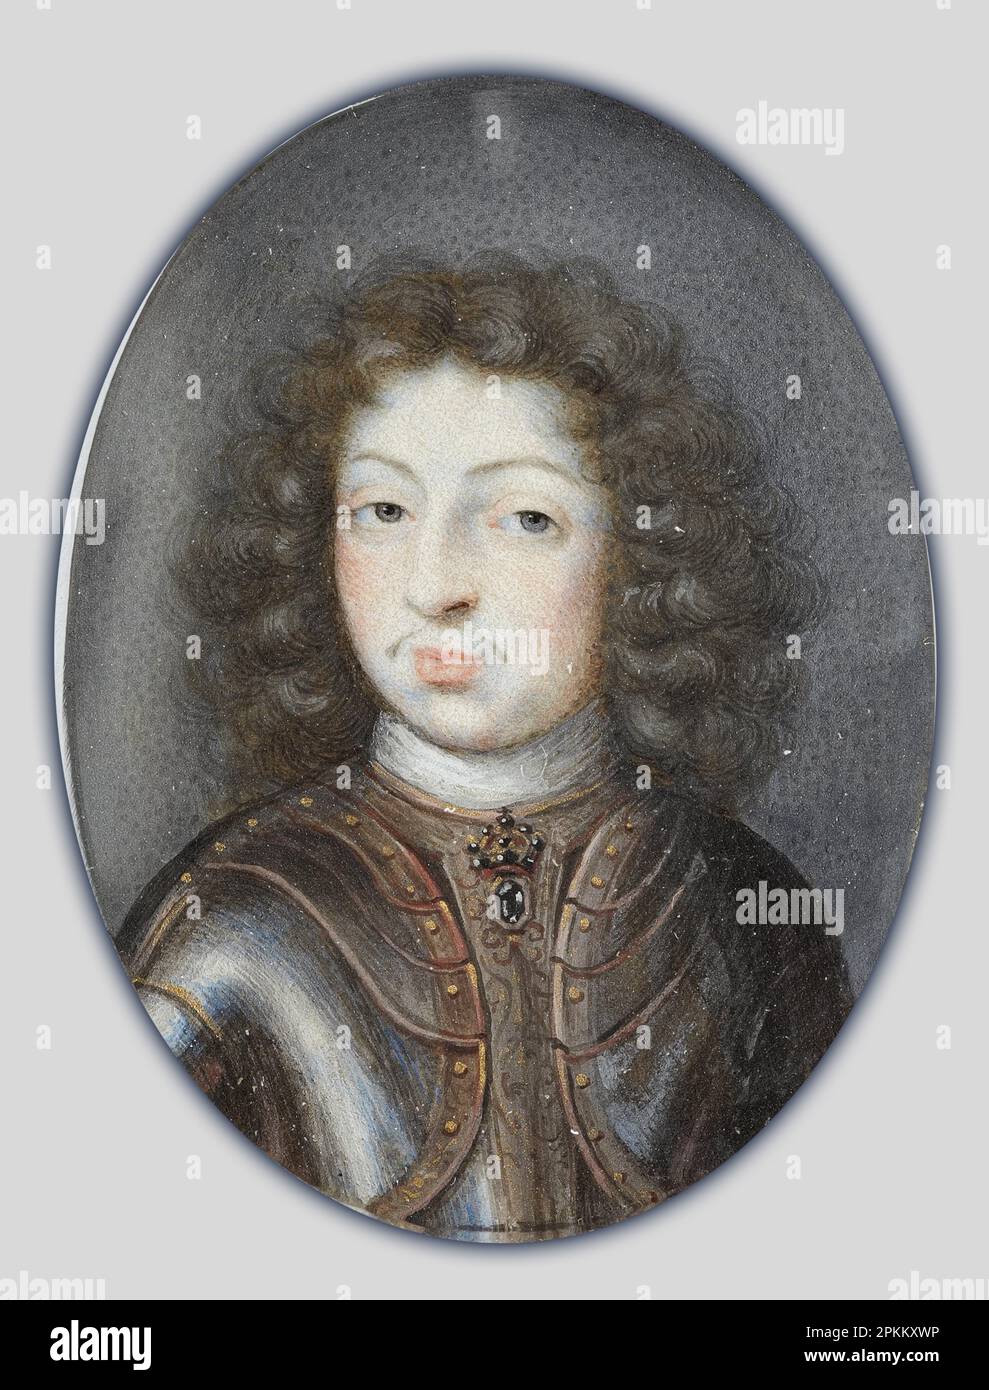 Retrato en miniatura de Carlos XI, rey de Suecia 1660-1697 entre 1672 y 1675 por Pierre Signac Foto de stock